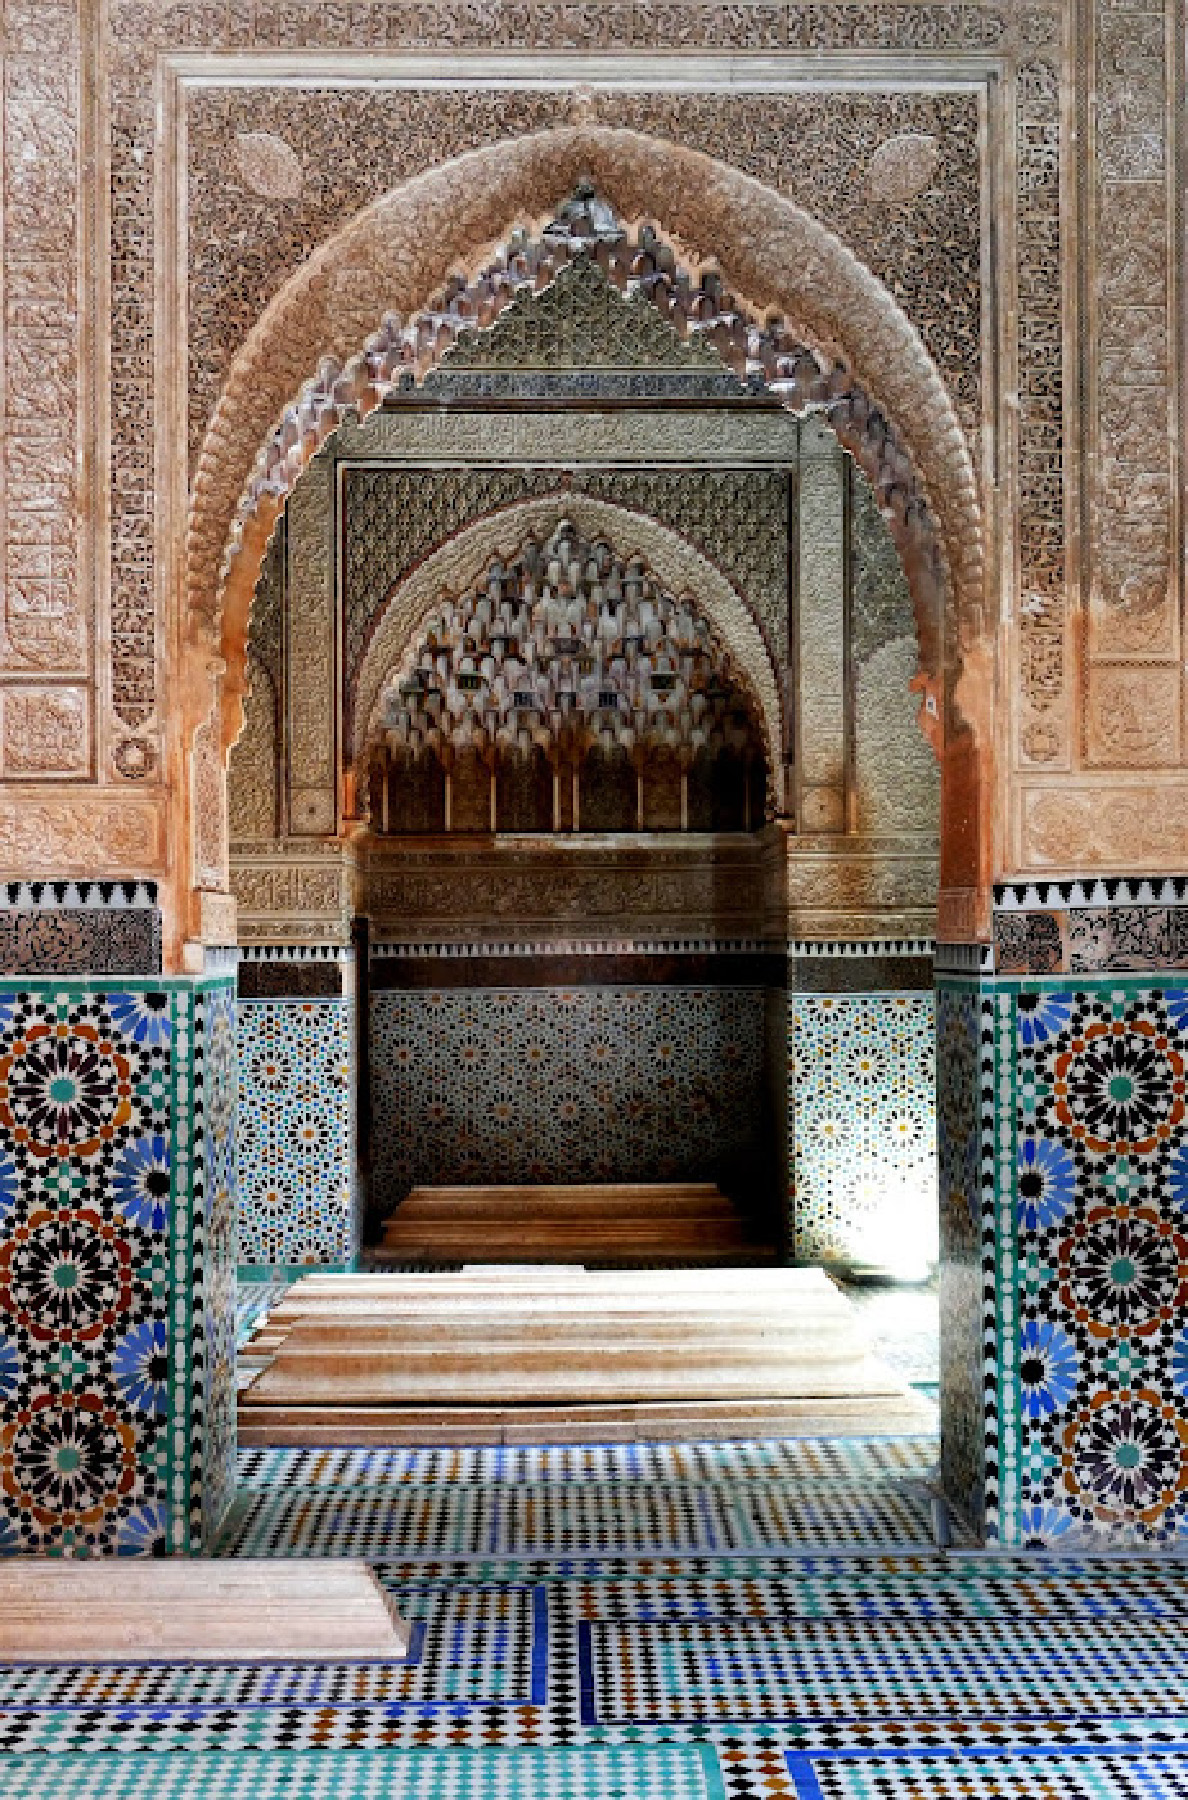 Kiến trúc phong cách Moorish từ vùng Andalusia và các chi tiết tinh xảo từ những thợ thủ công lành nghề là những đặc điểm nổi bật của Cung điện El Bahia ở Marrakech, Morocco. (Ảnh: Đăng dưới sự cho phép của anh Phil Allen)